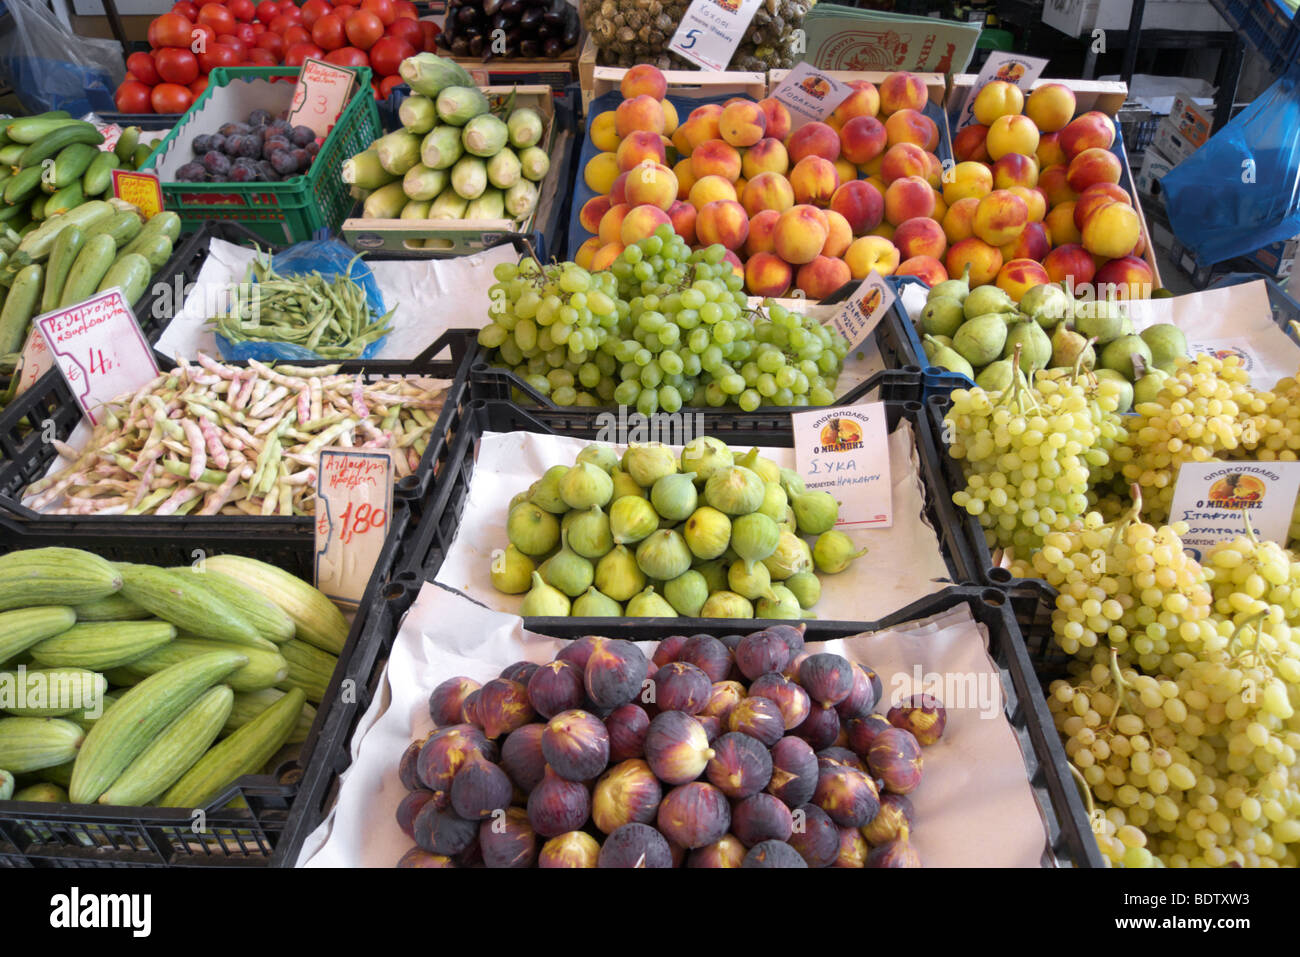 Obst und Gemüse-Markt, Rethymno, Kreta, Griechenland Stockfotografie - Alamy